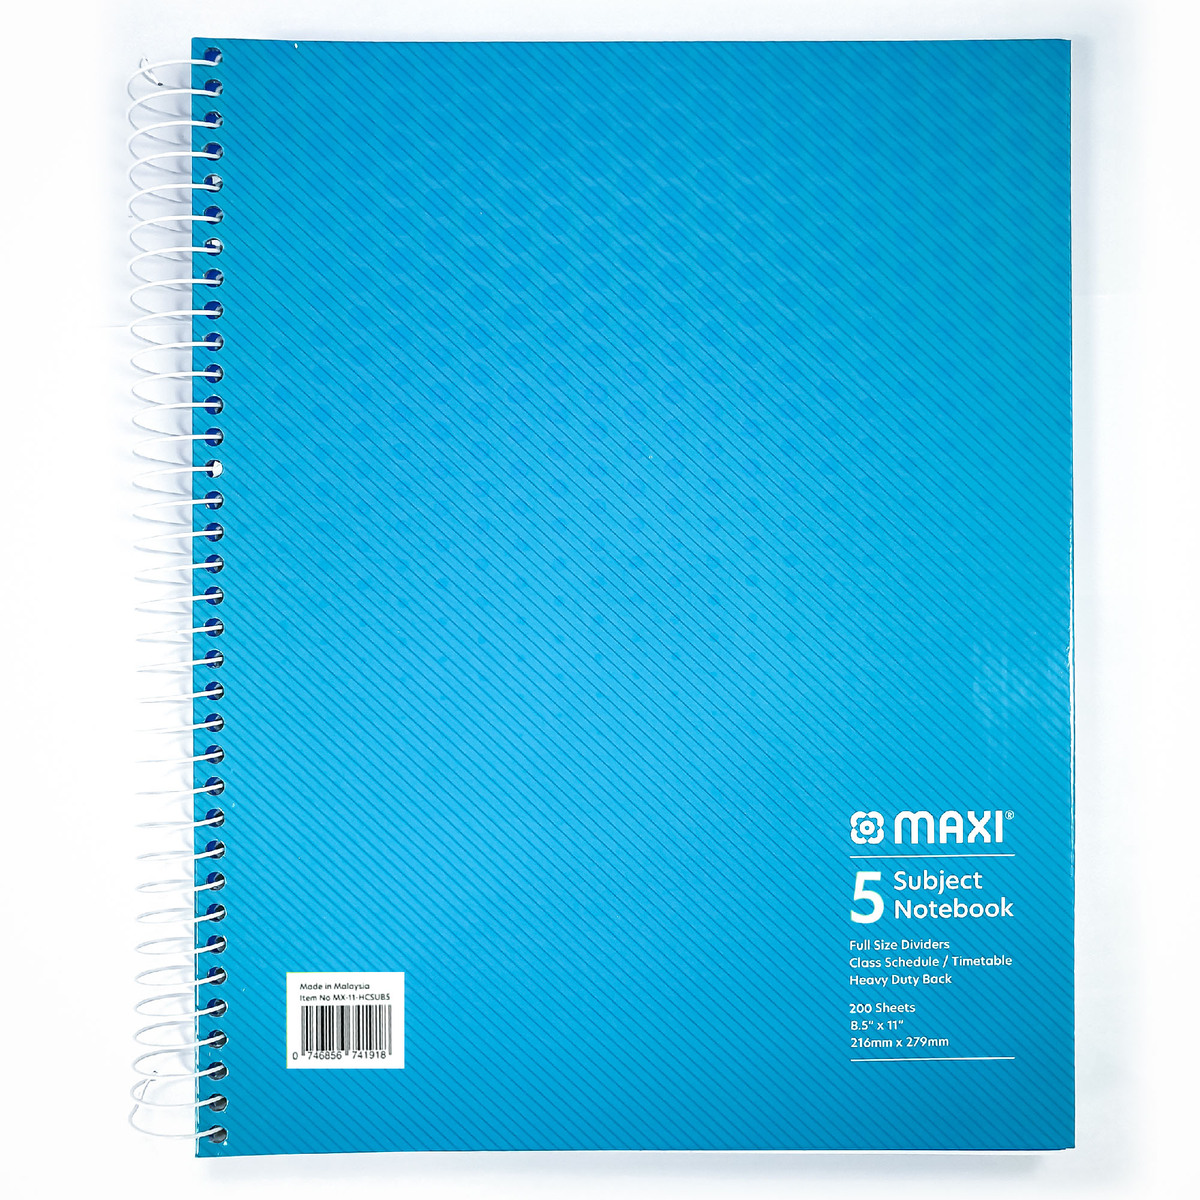 ماكسي مفكرة ورقية بسلك بغطاء صلب 5 موضوعات ، 11 بوصة ×8.5 بوصة ، 200 ورقة ، ألوان متنوعة ، MX-11-HCSUB5